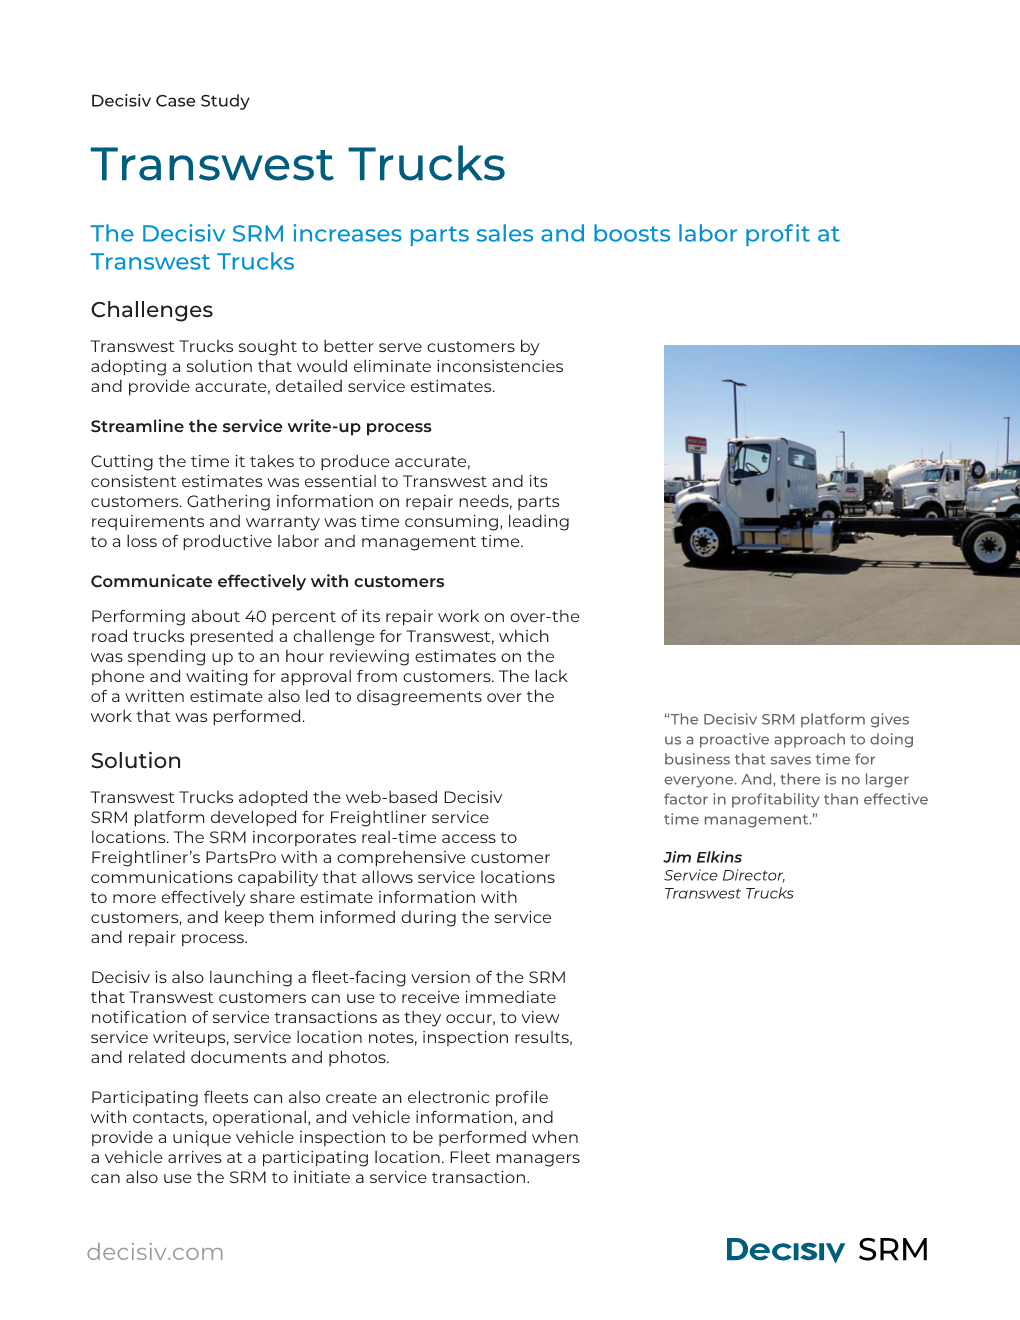 Transwest Trucks